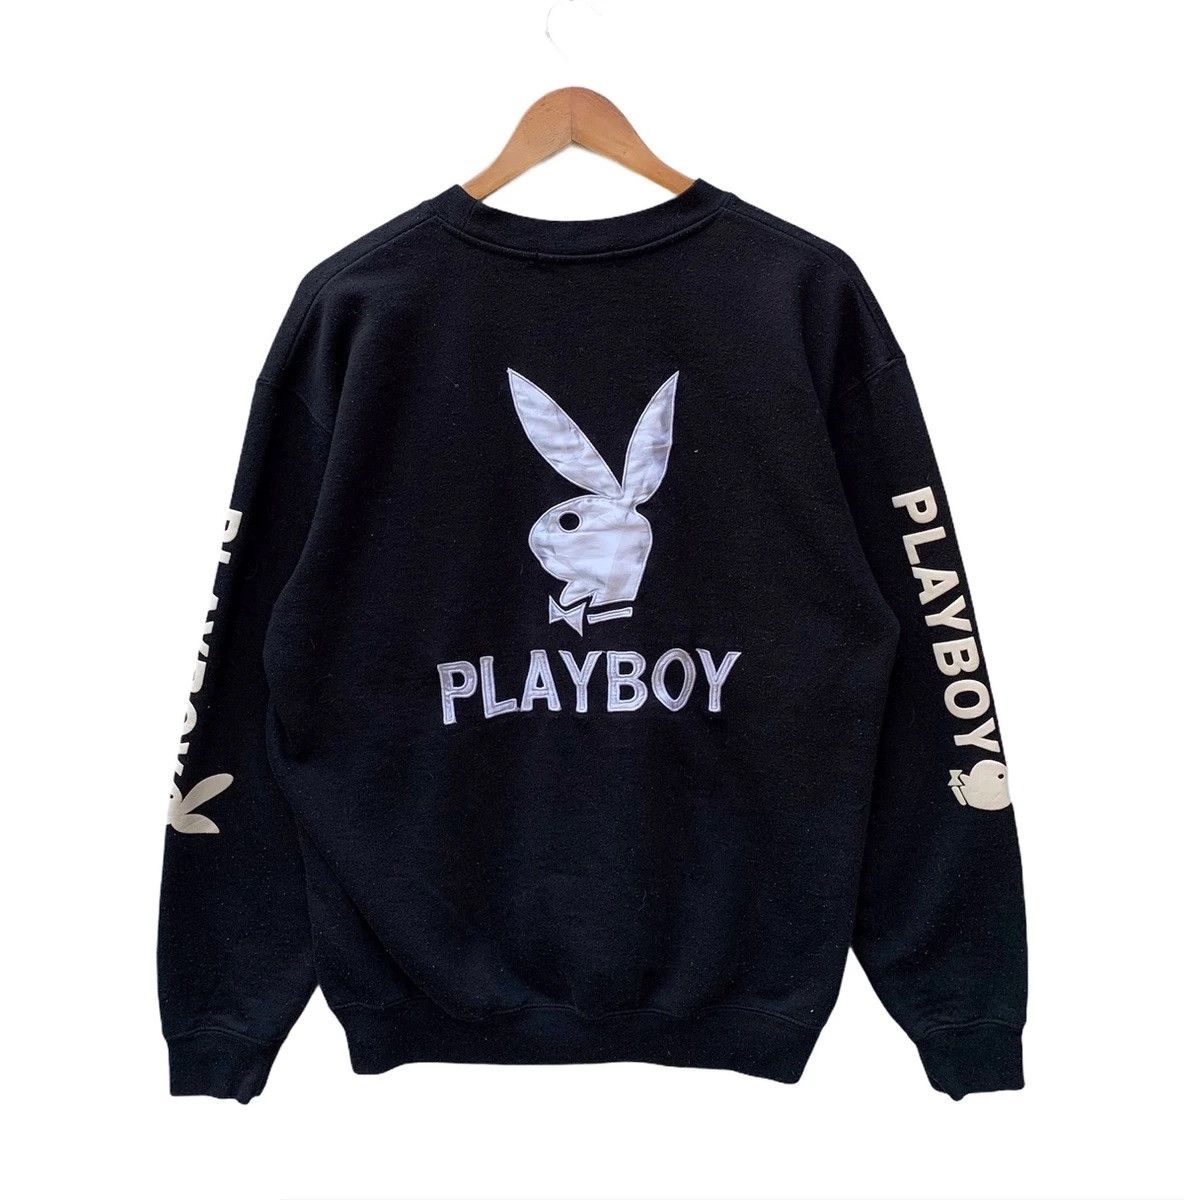 Pre-owned Playboy X Vintage Playboy Crewneck Pullover Sweatshirt In Black